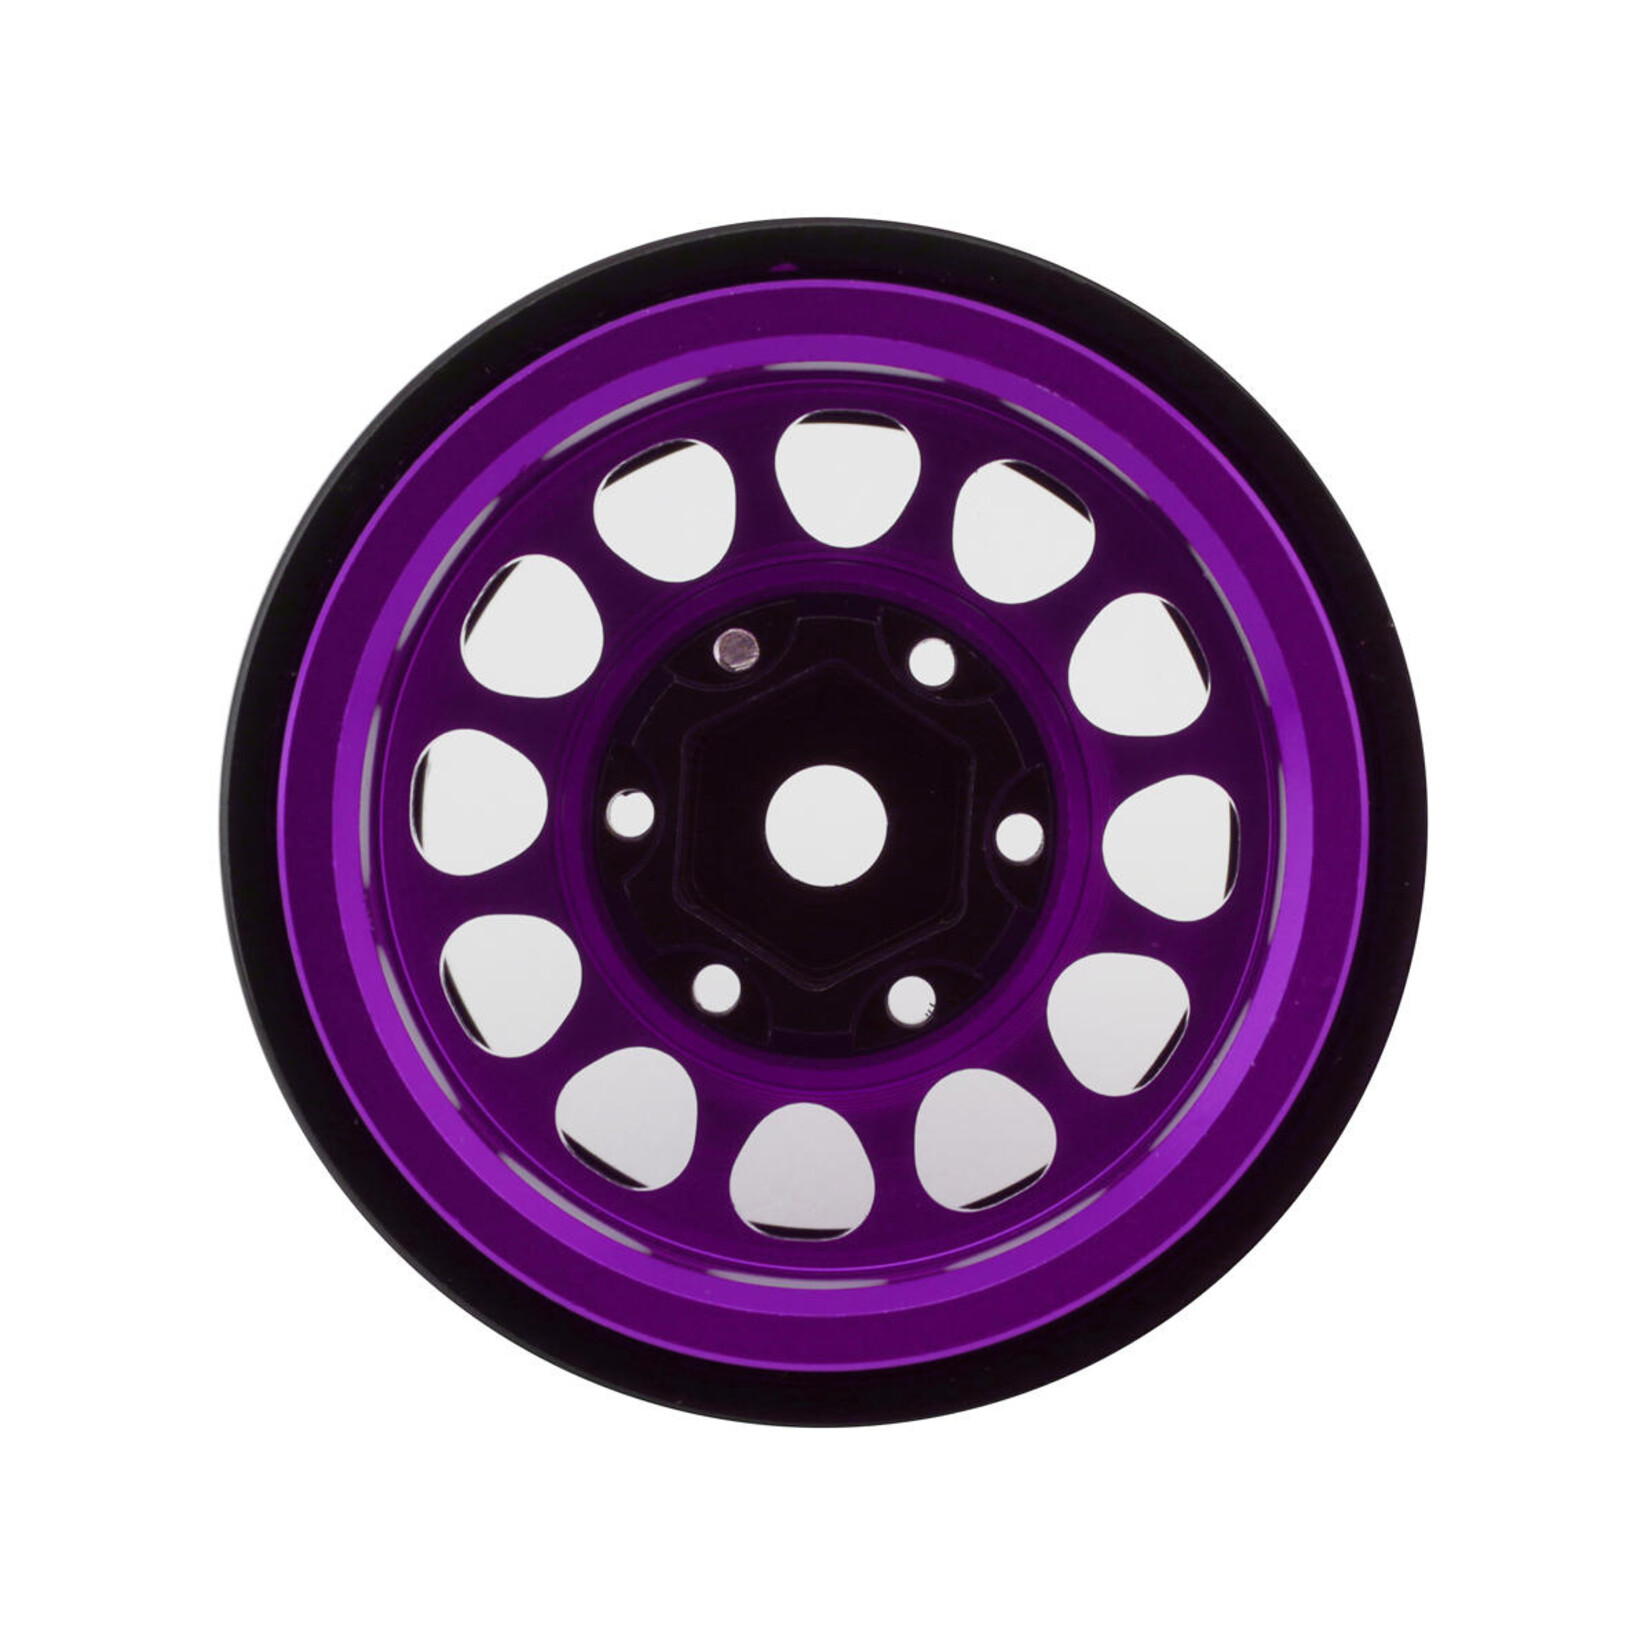 Treal Treal Hobby Type I 1.0" Classic 12-Spoke Beadlock Wheels (Purple) (4) (27.2g) #X003Z3JVYV